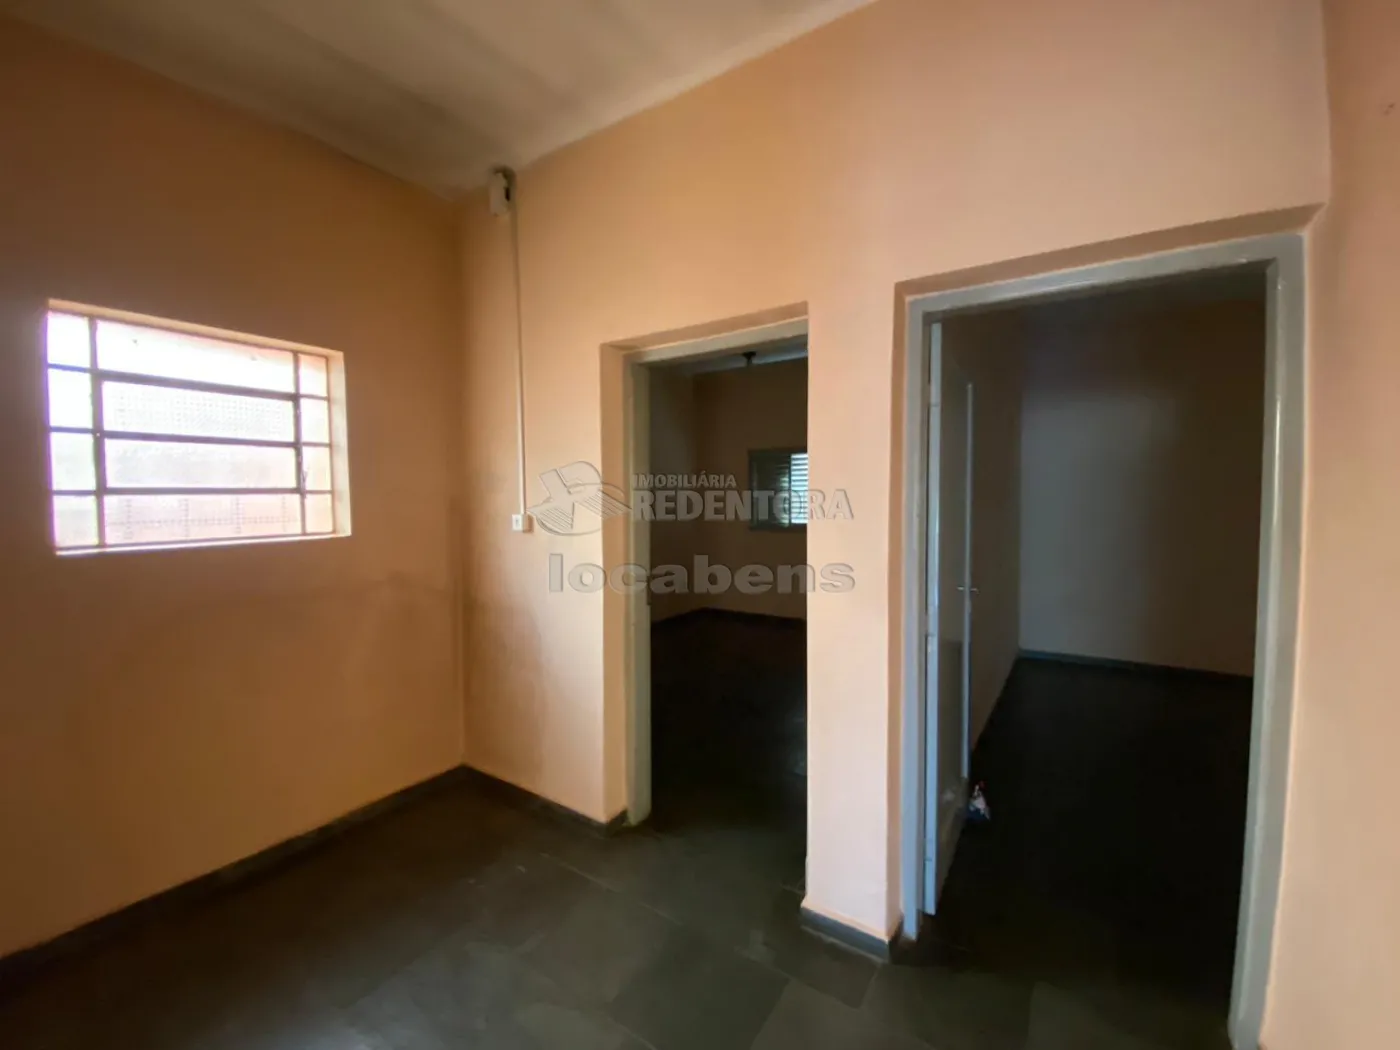 Alugar Casa / Padrão em São José do Rio Preto R$ 1.800,00 - Foto 11